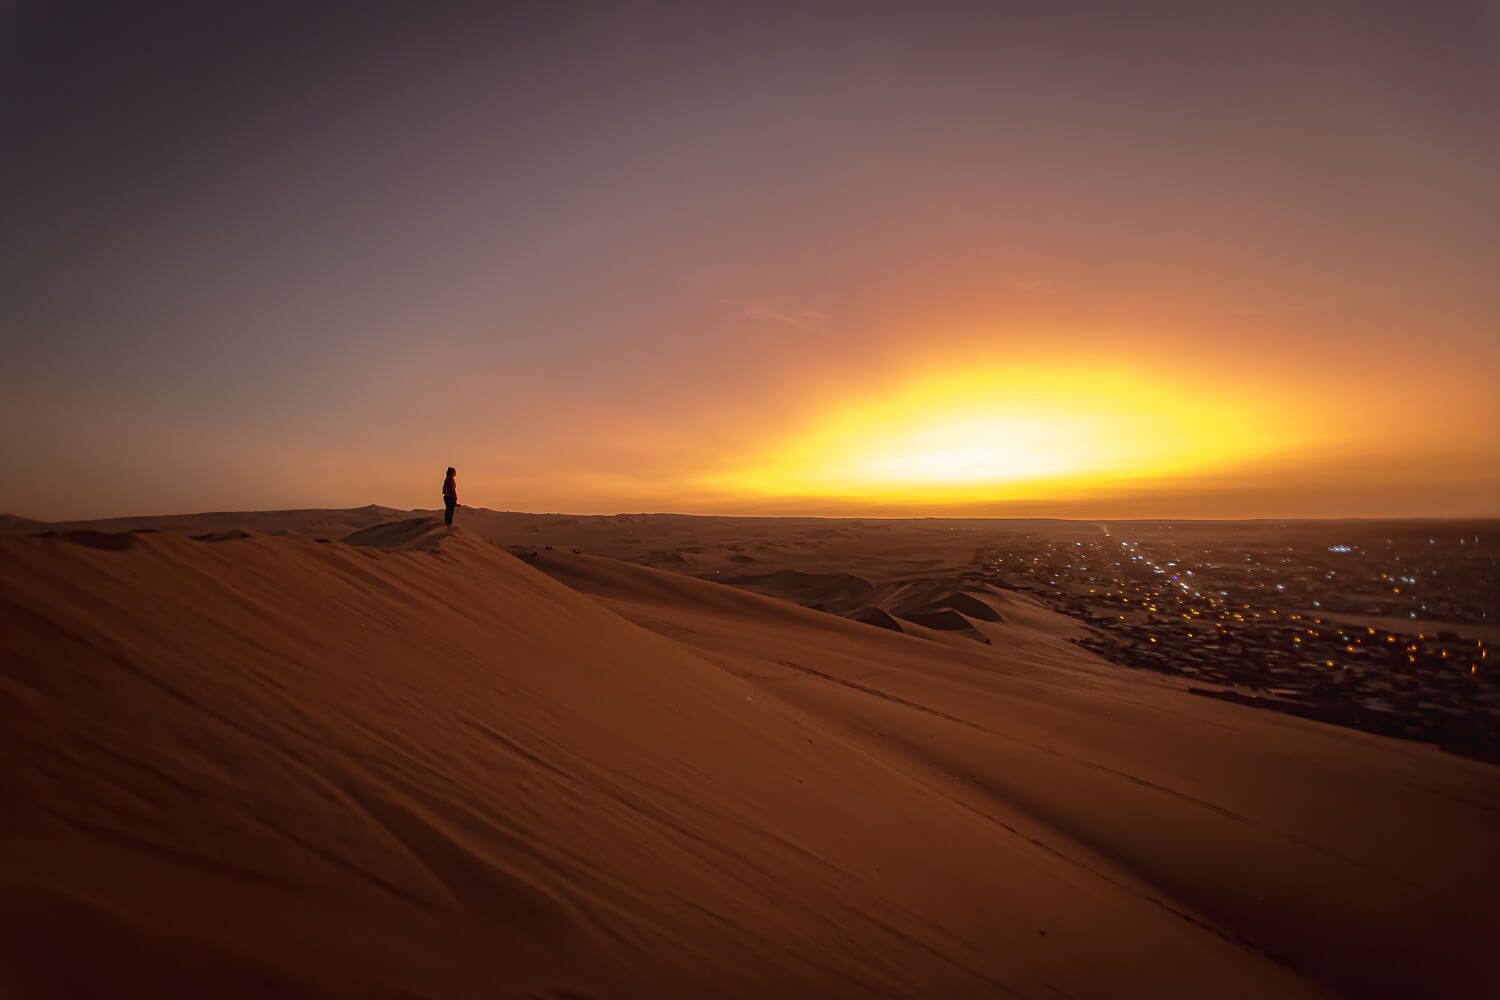 Sunset atop the dunes